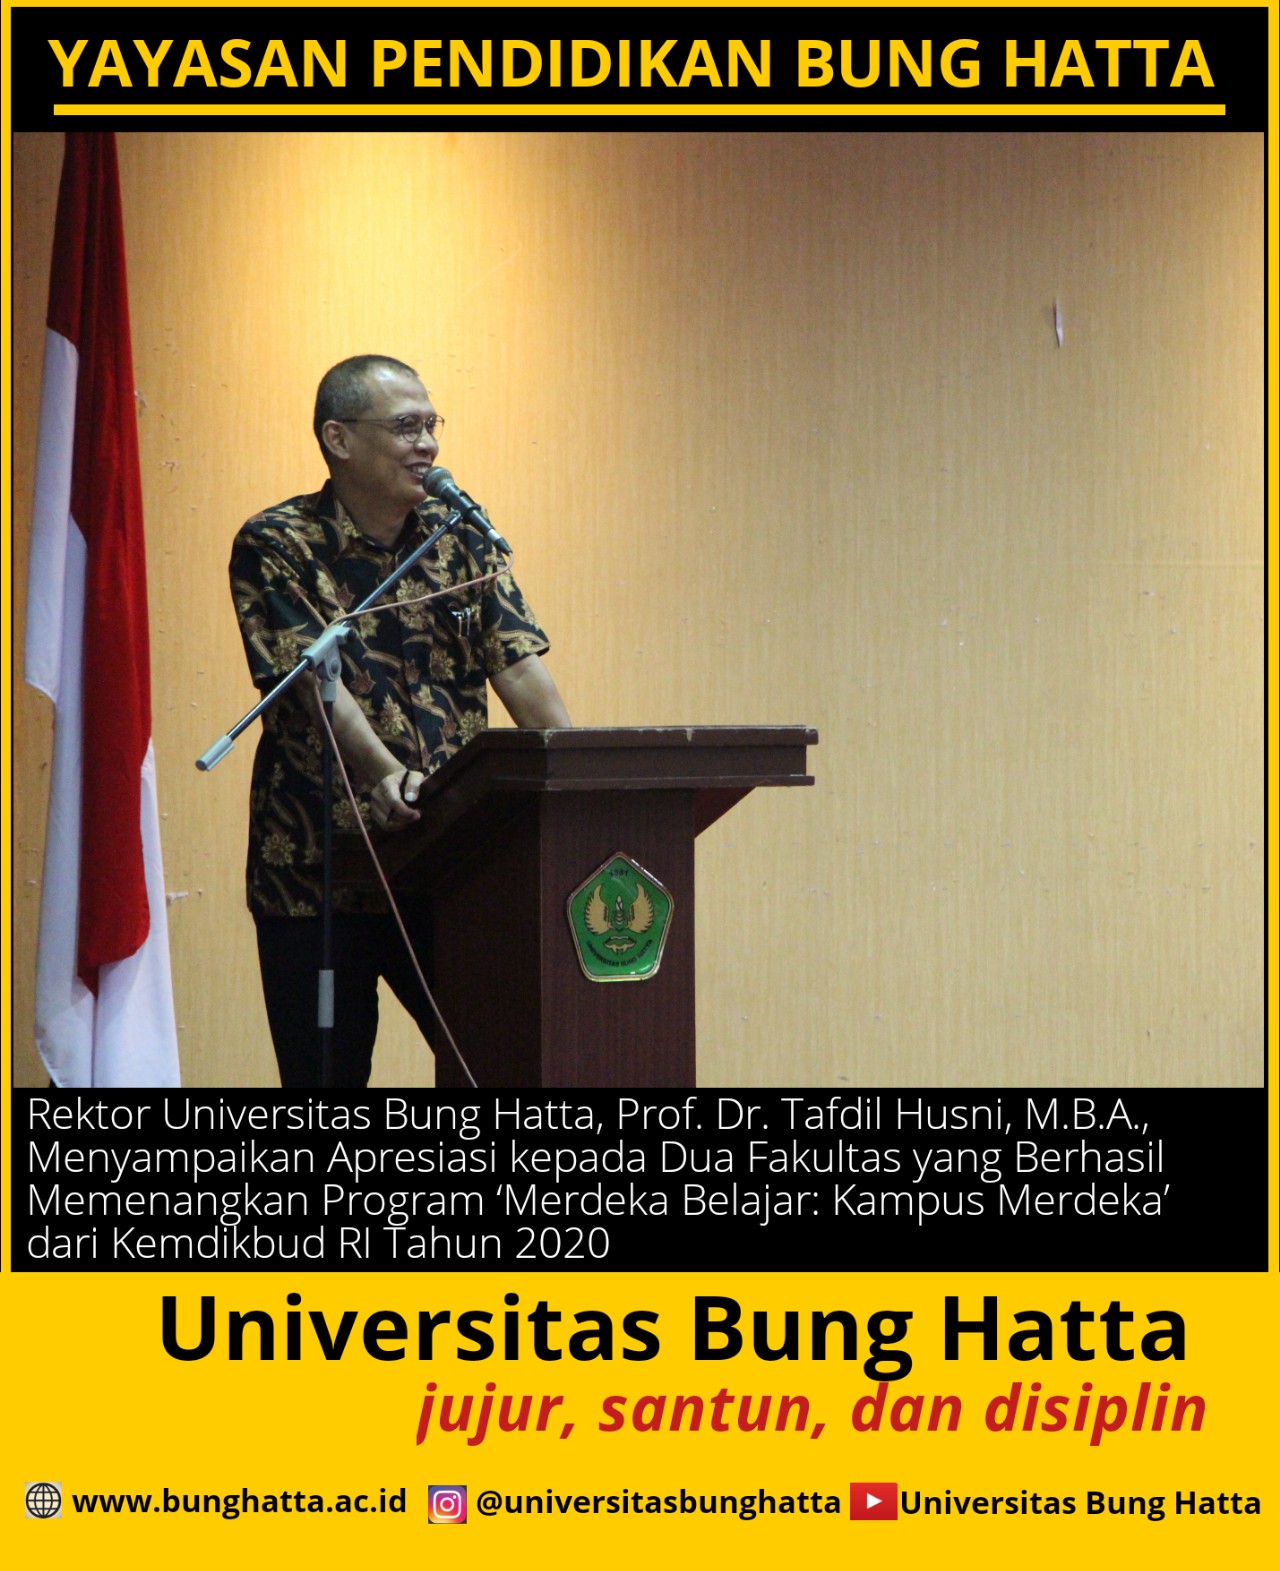 Rektor Universitas Bung Hatta Apresiasi kepada Fakultas yang Berhasil Memenangkan Hibah 'Merdeka Belajar: Kampus Merdeka' dari Kemdikbud RI 